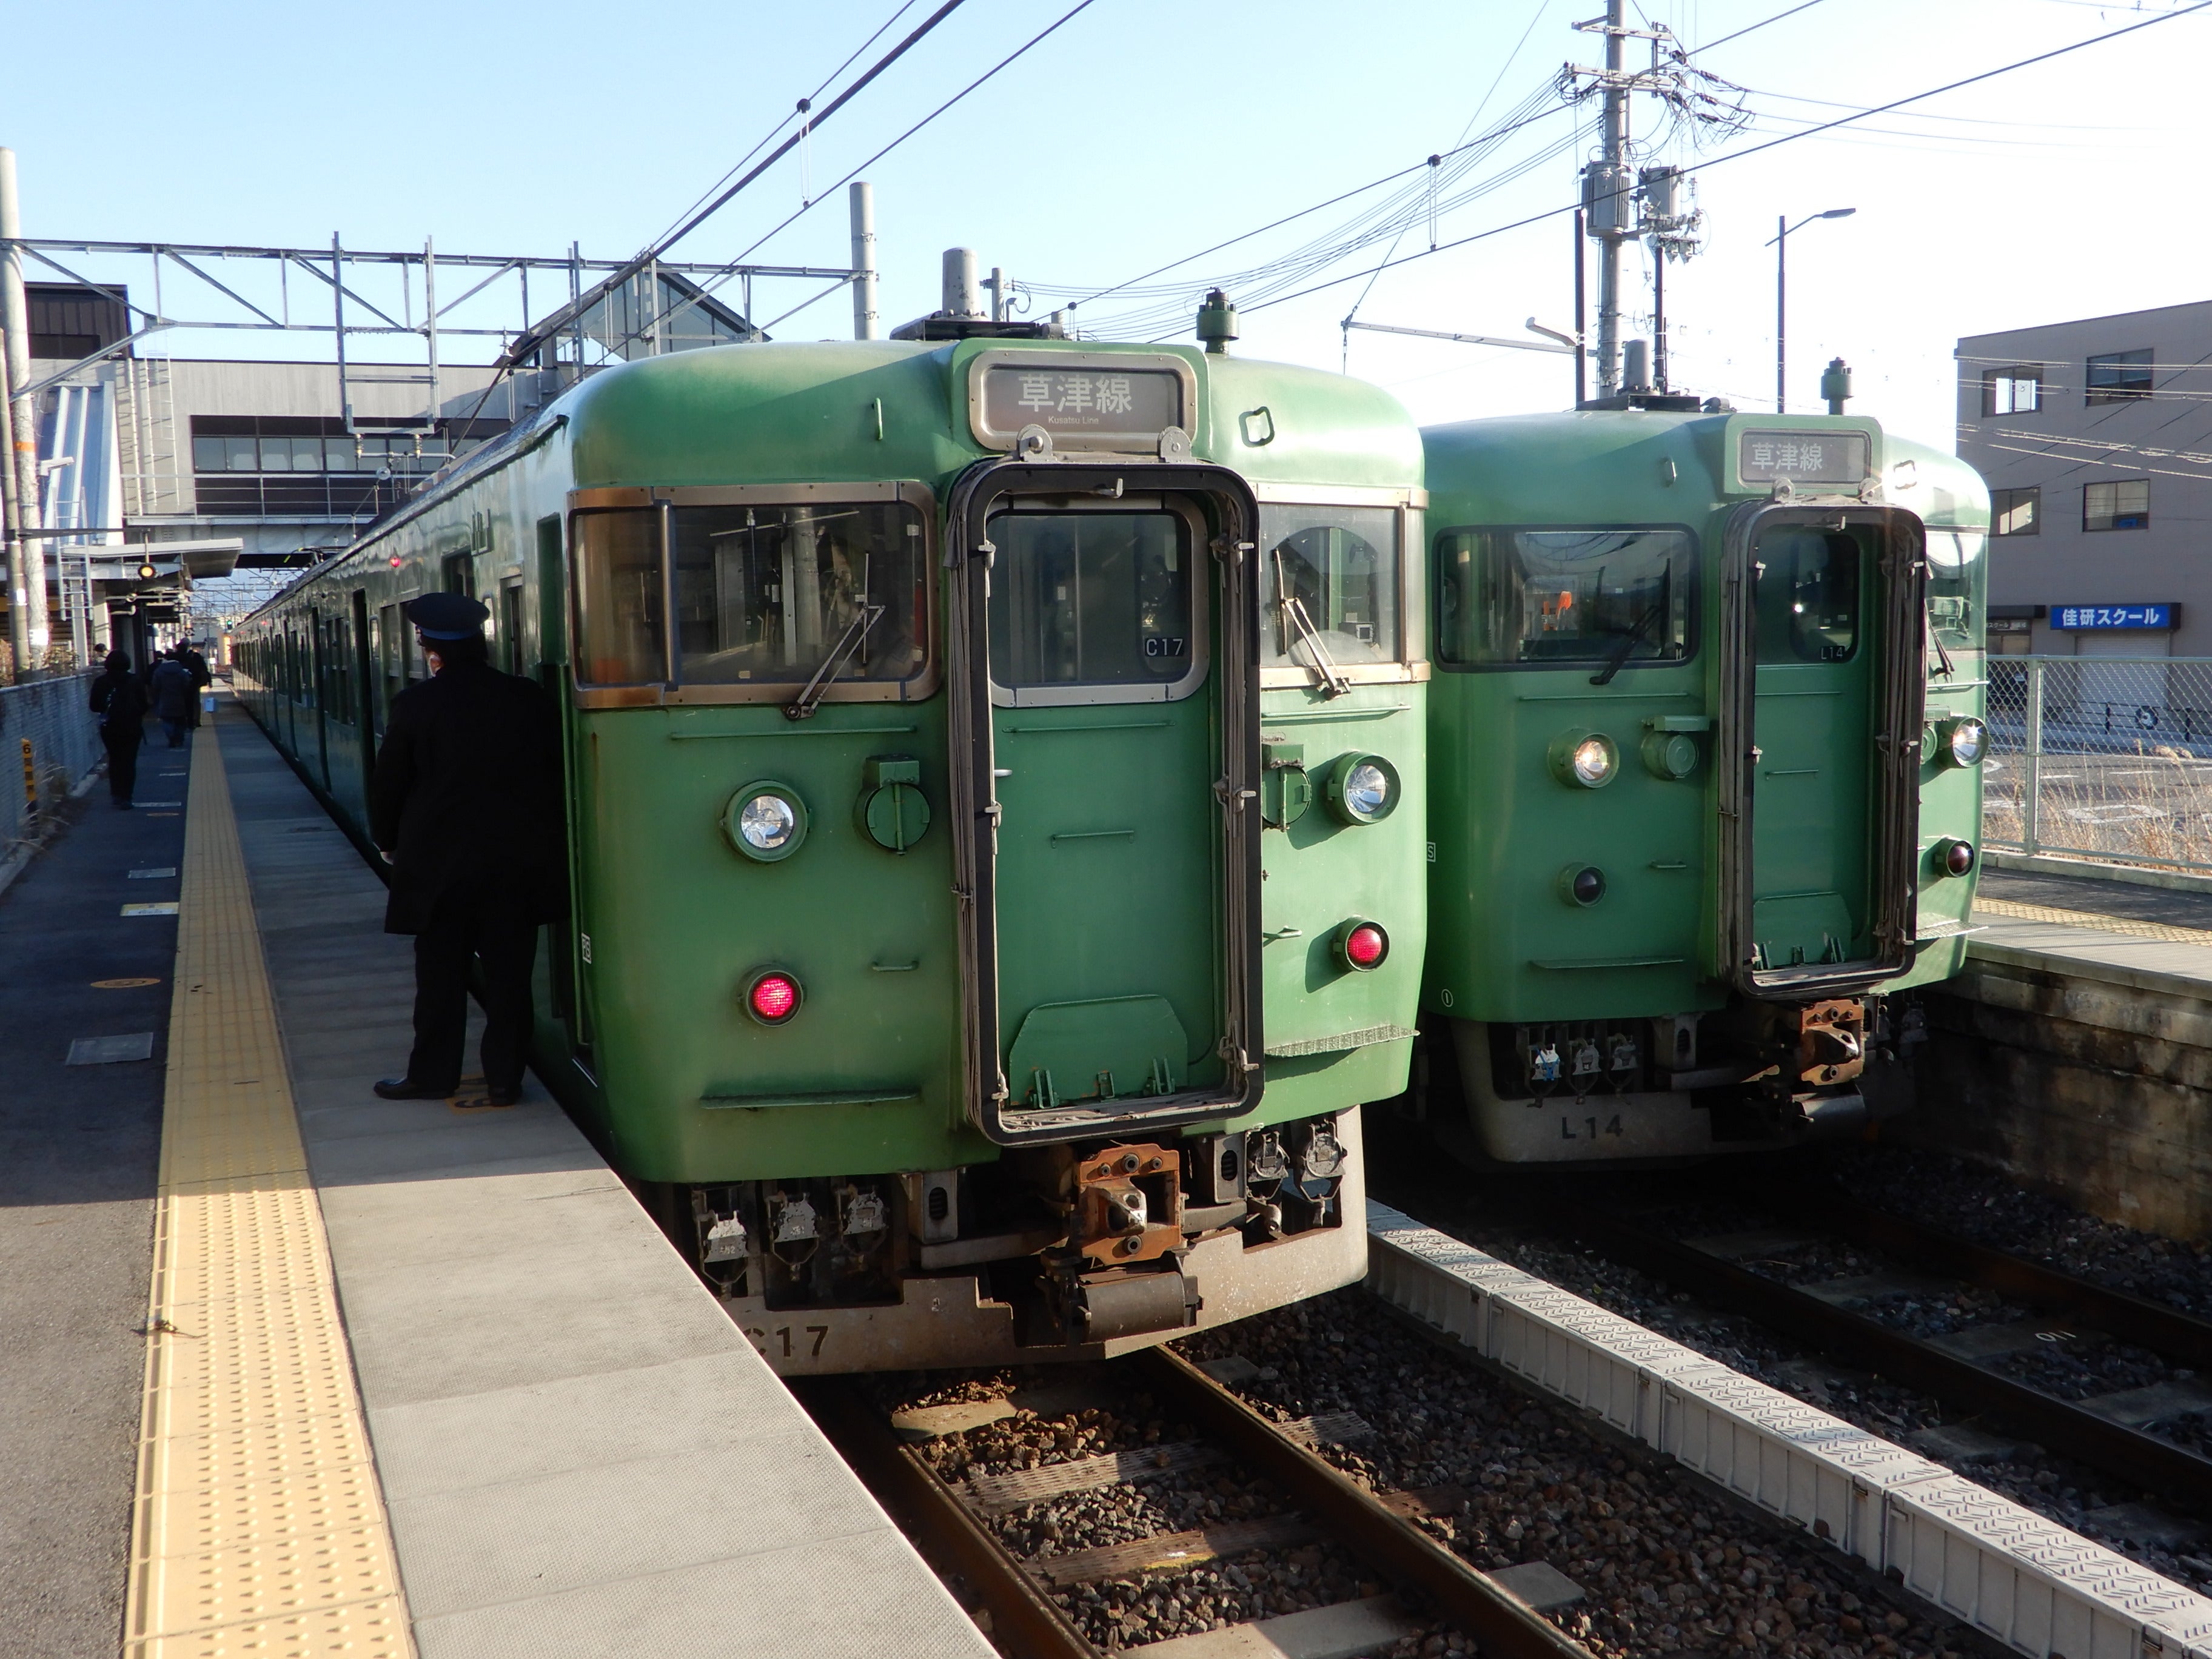 117系 京都地域色 京都 抹茶色 緑色 併走に 207系 113系 205系 鉄道